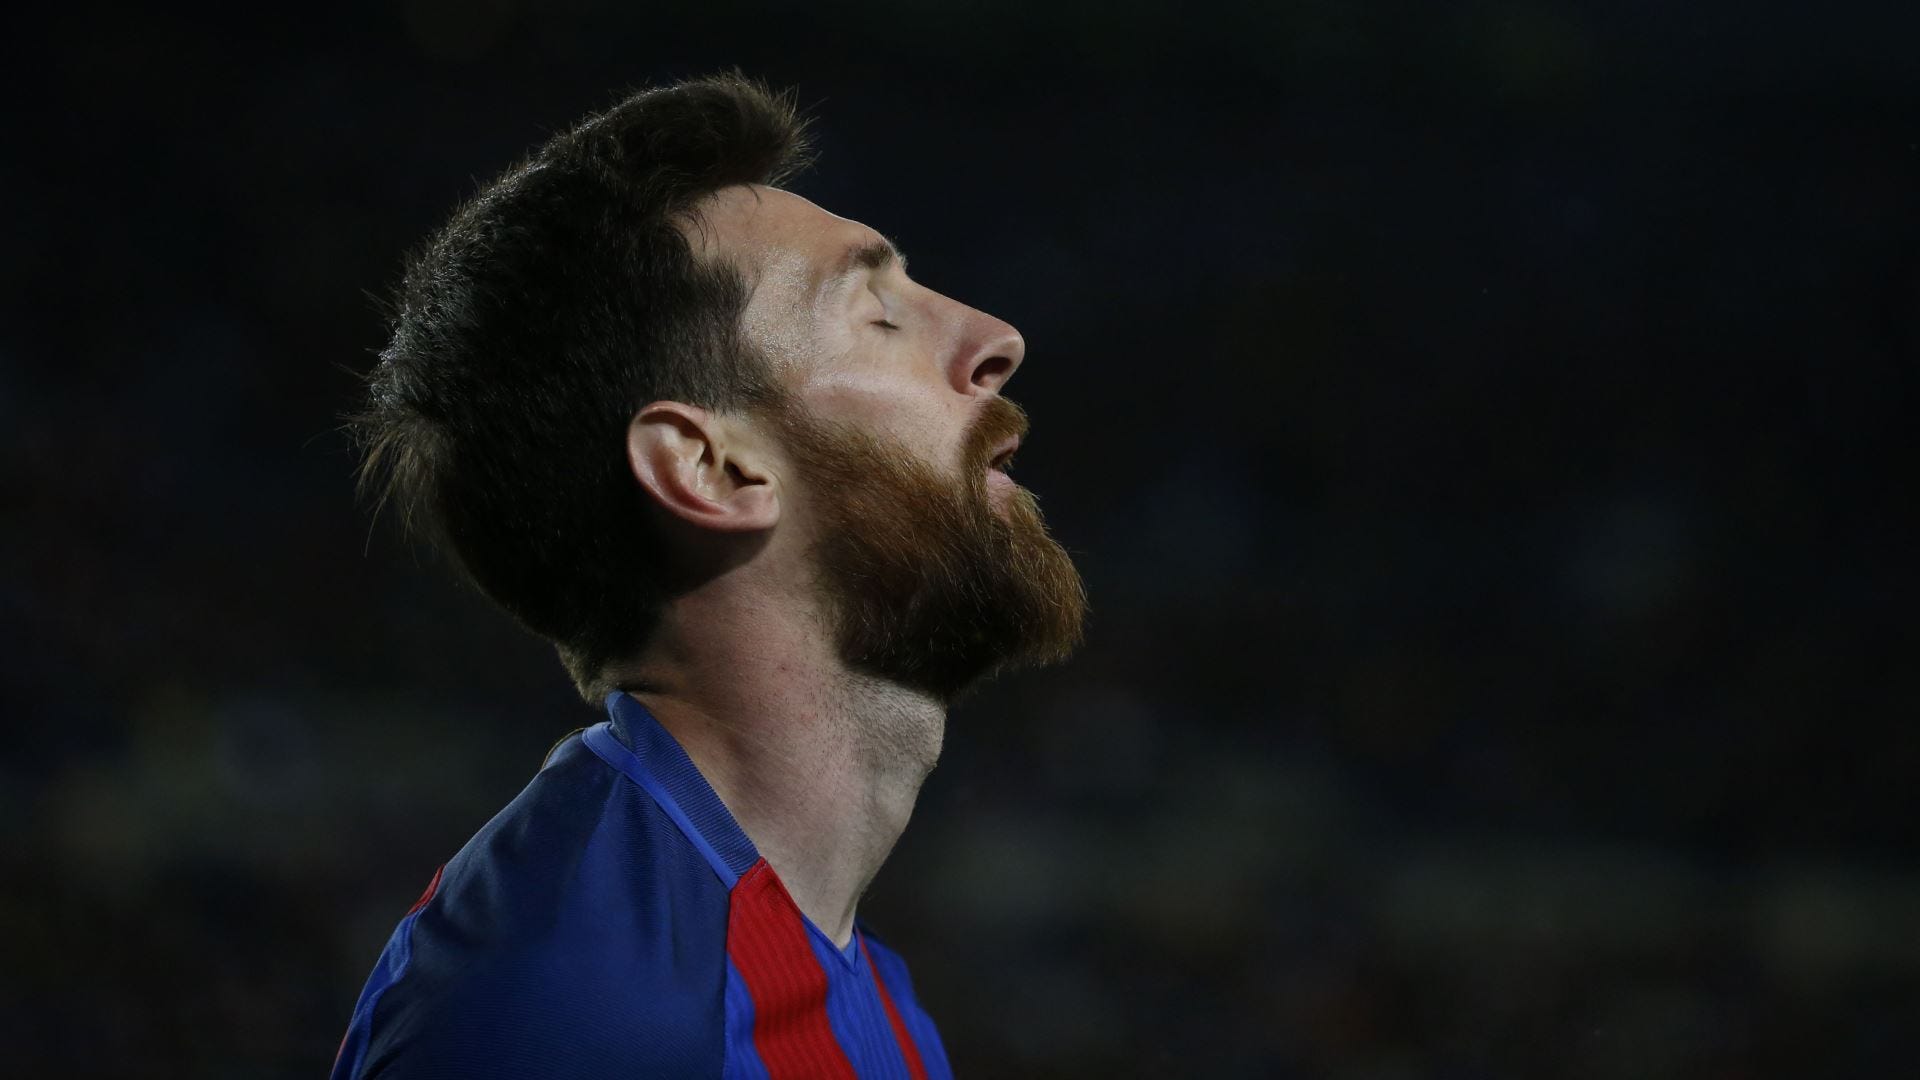 Tin tức Messi mới nhất về kỷ lục của anh ấy đang là chủ đề nóng và được quan tâm hàng đầu trong giới bóng đá. Hãy cập nhật thông tin về Messi record với những thông tin hữu ích và chính xác nhất để hiểu rõ hơn về siêu sao Messi!